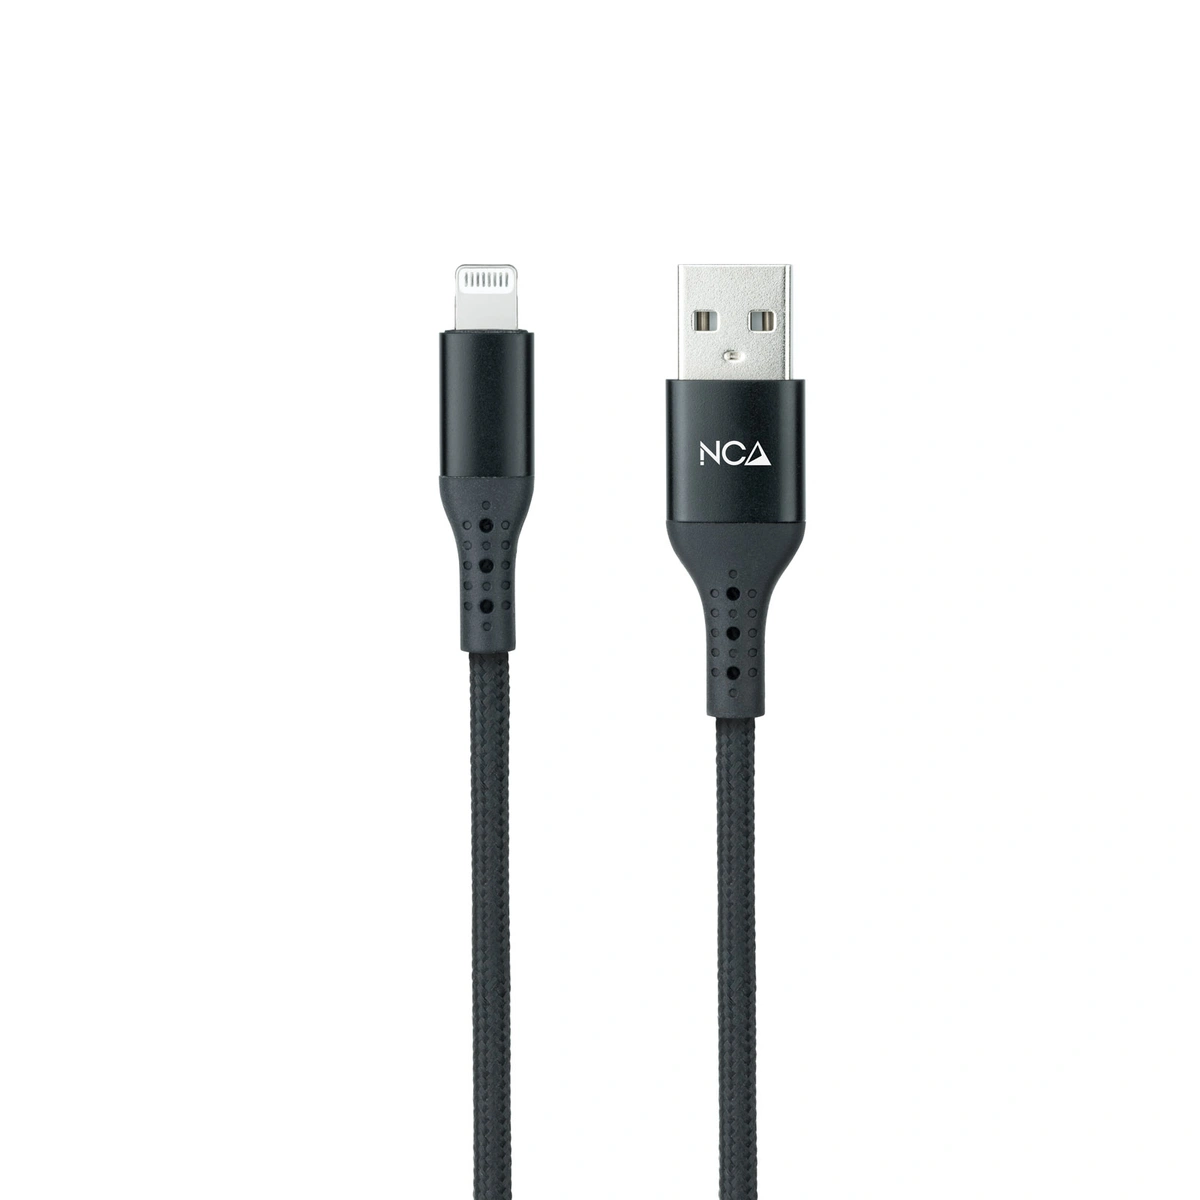 Imagen de: Cable Lightning a USB 2.0 1 m 